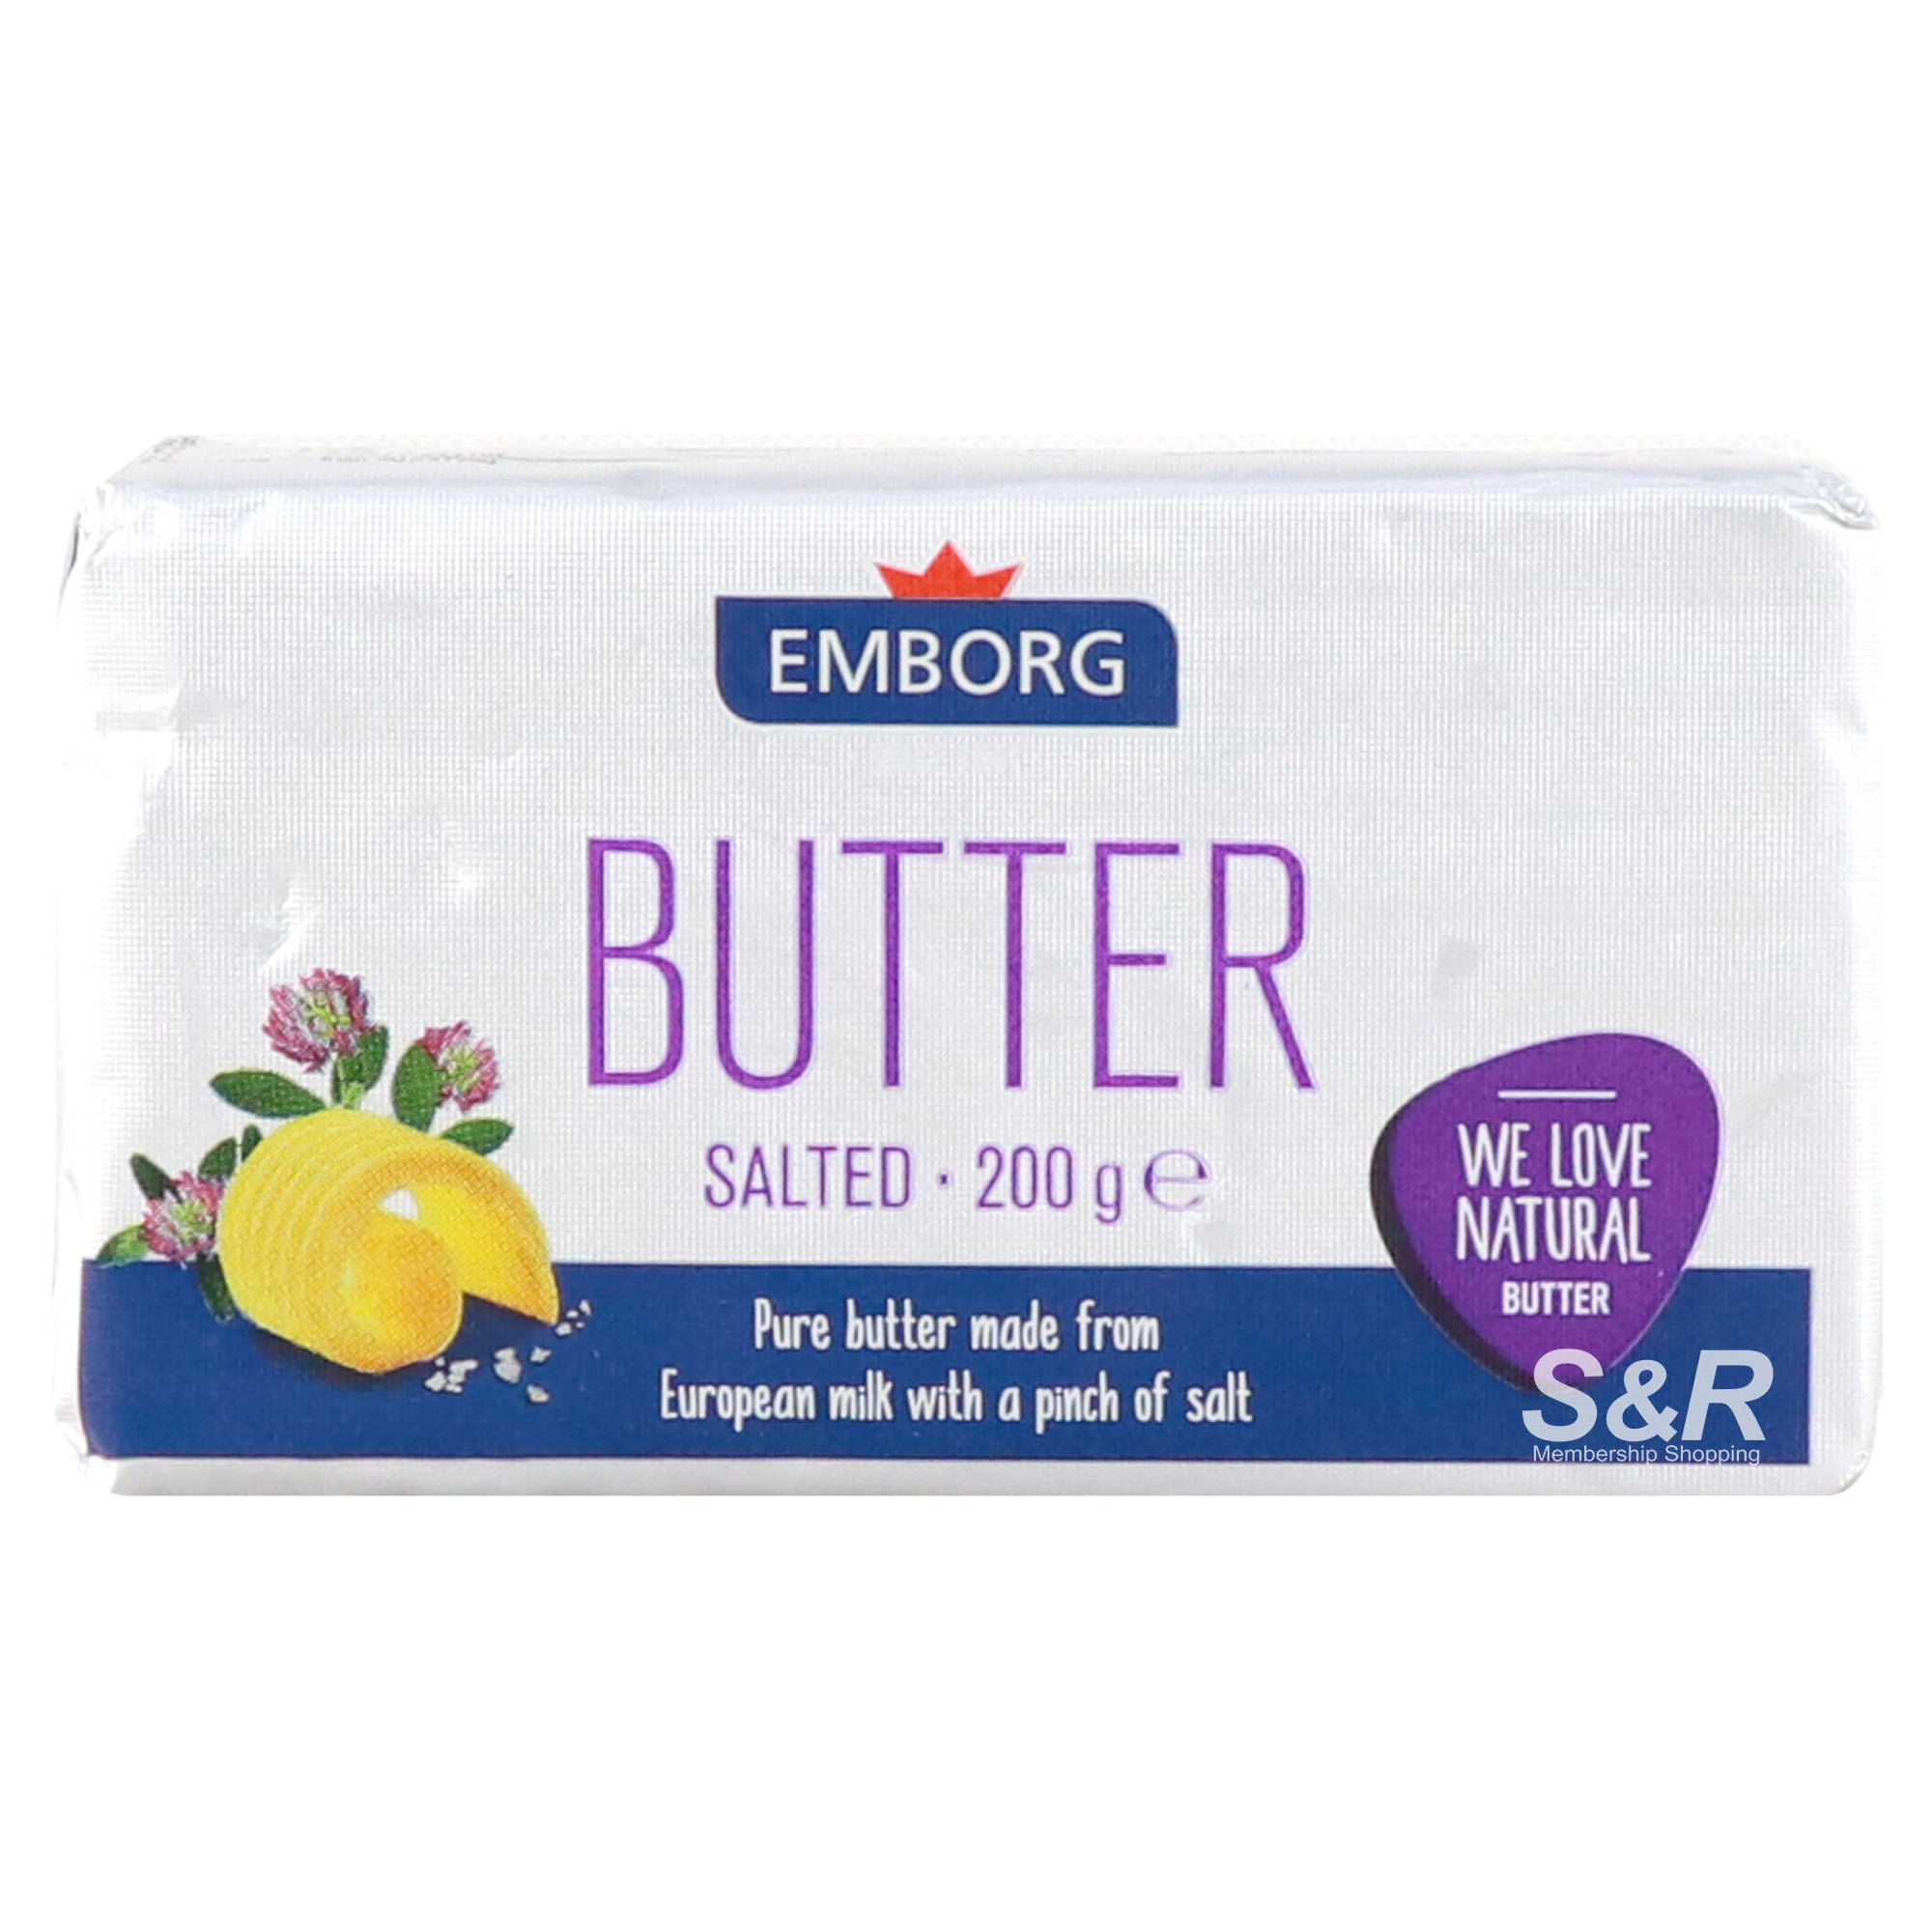 Emborg Butter Salted 200g